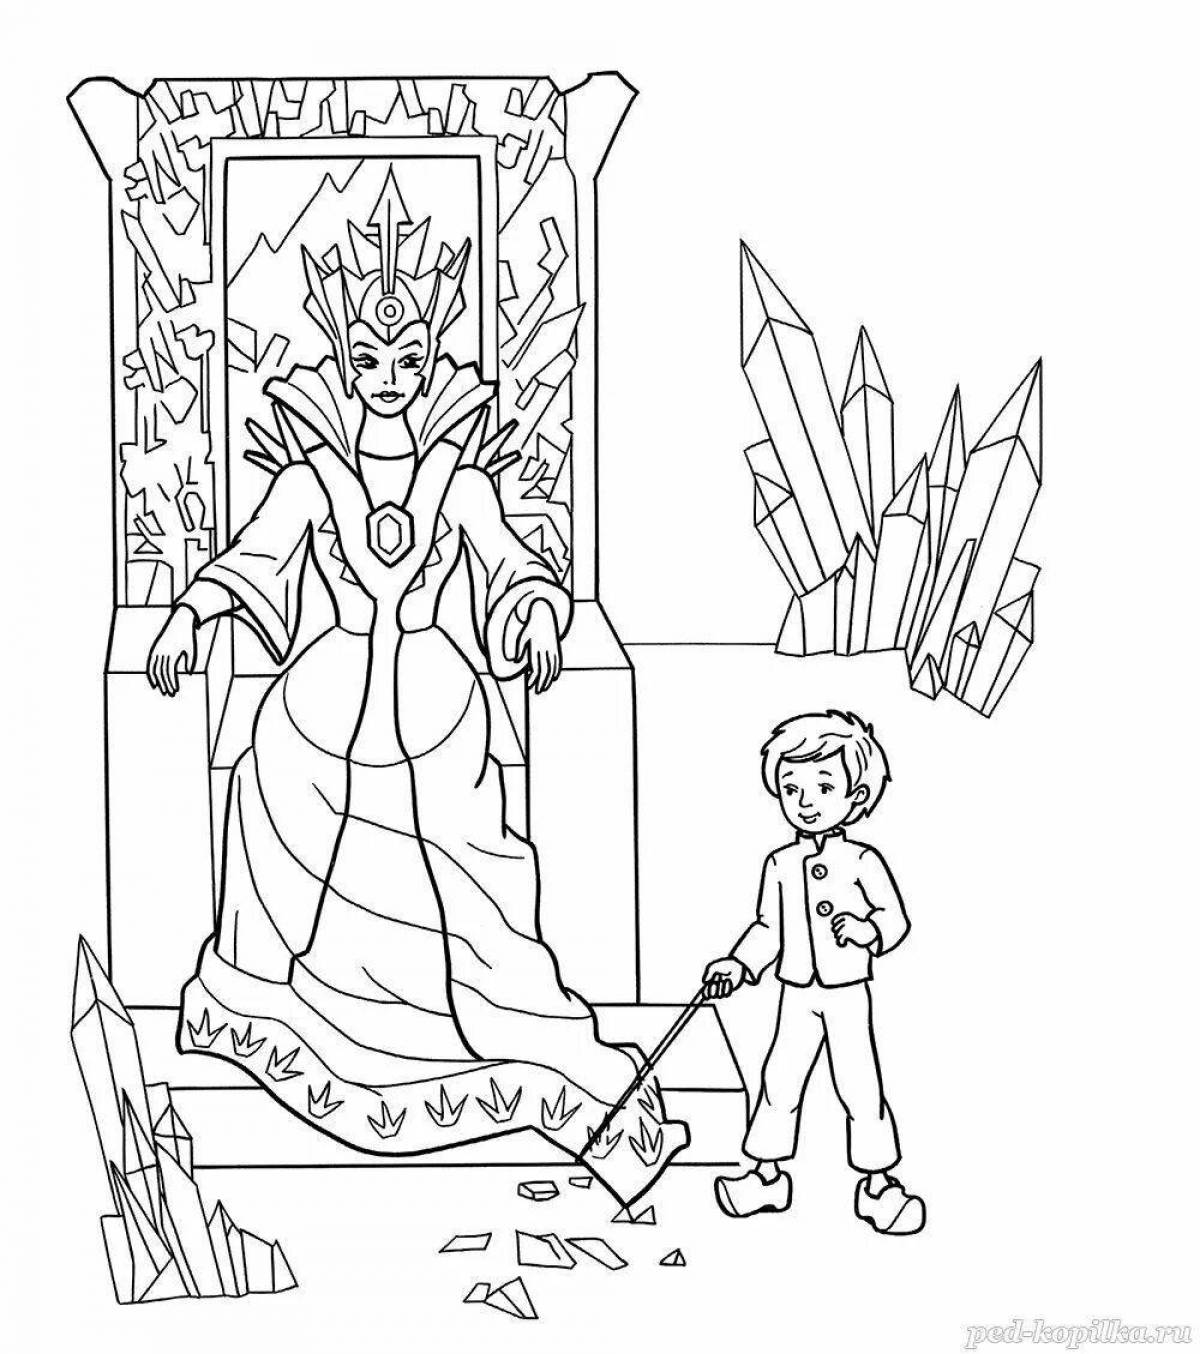 Иллюстрация к снежной королеве 5 класс. Раскраска Снежная Королева из сказки.